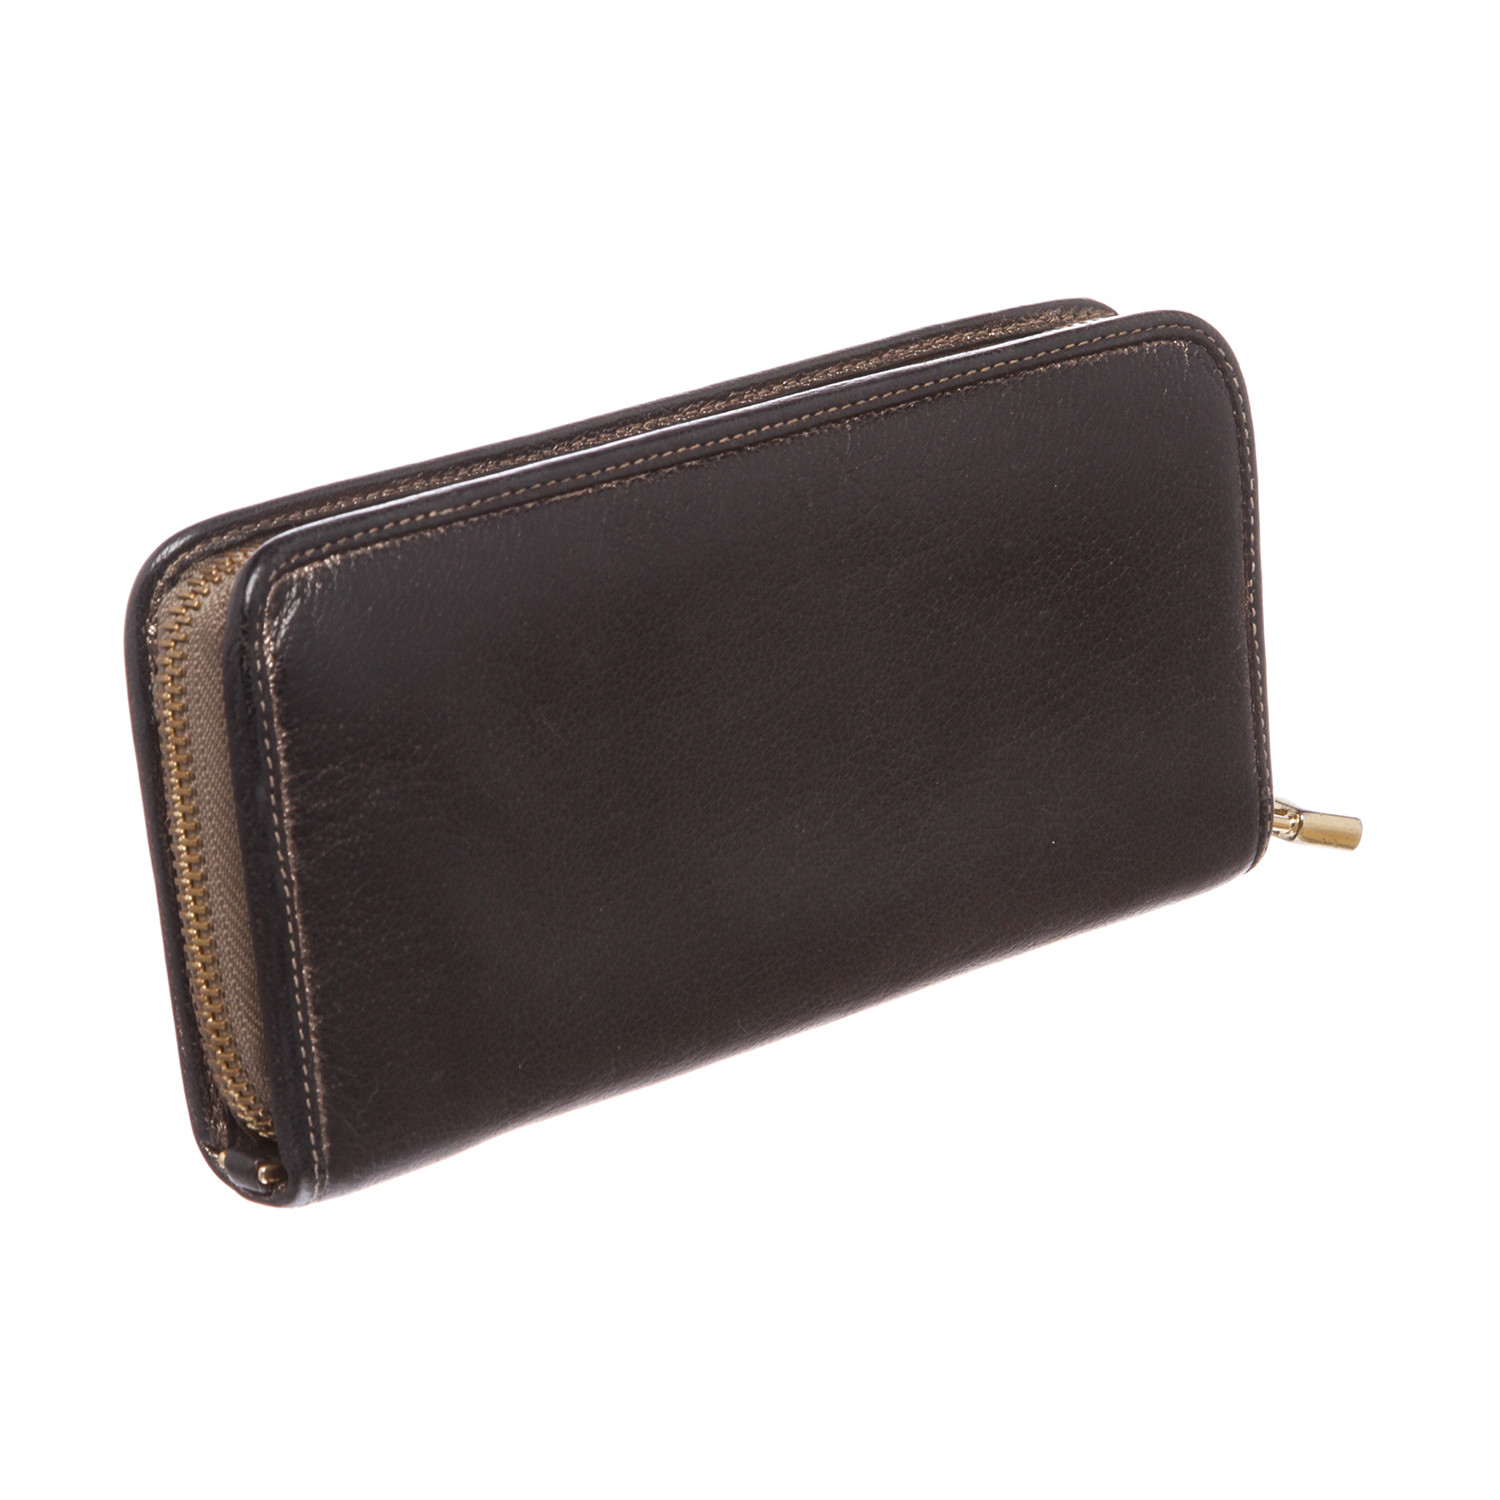 Loewe // Leather Long Zip Wallet // Black // Pre-Owned - Pre-Owned ...